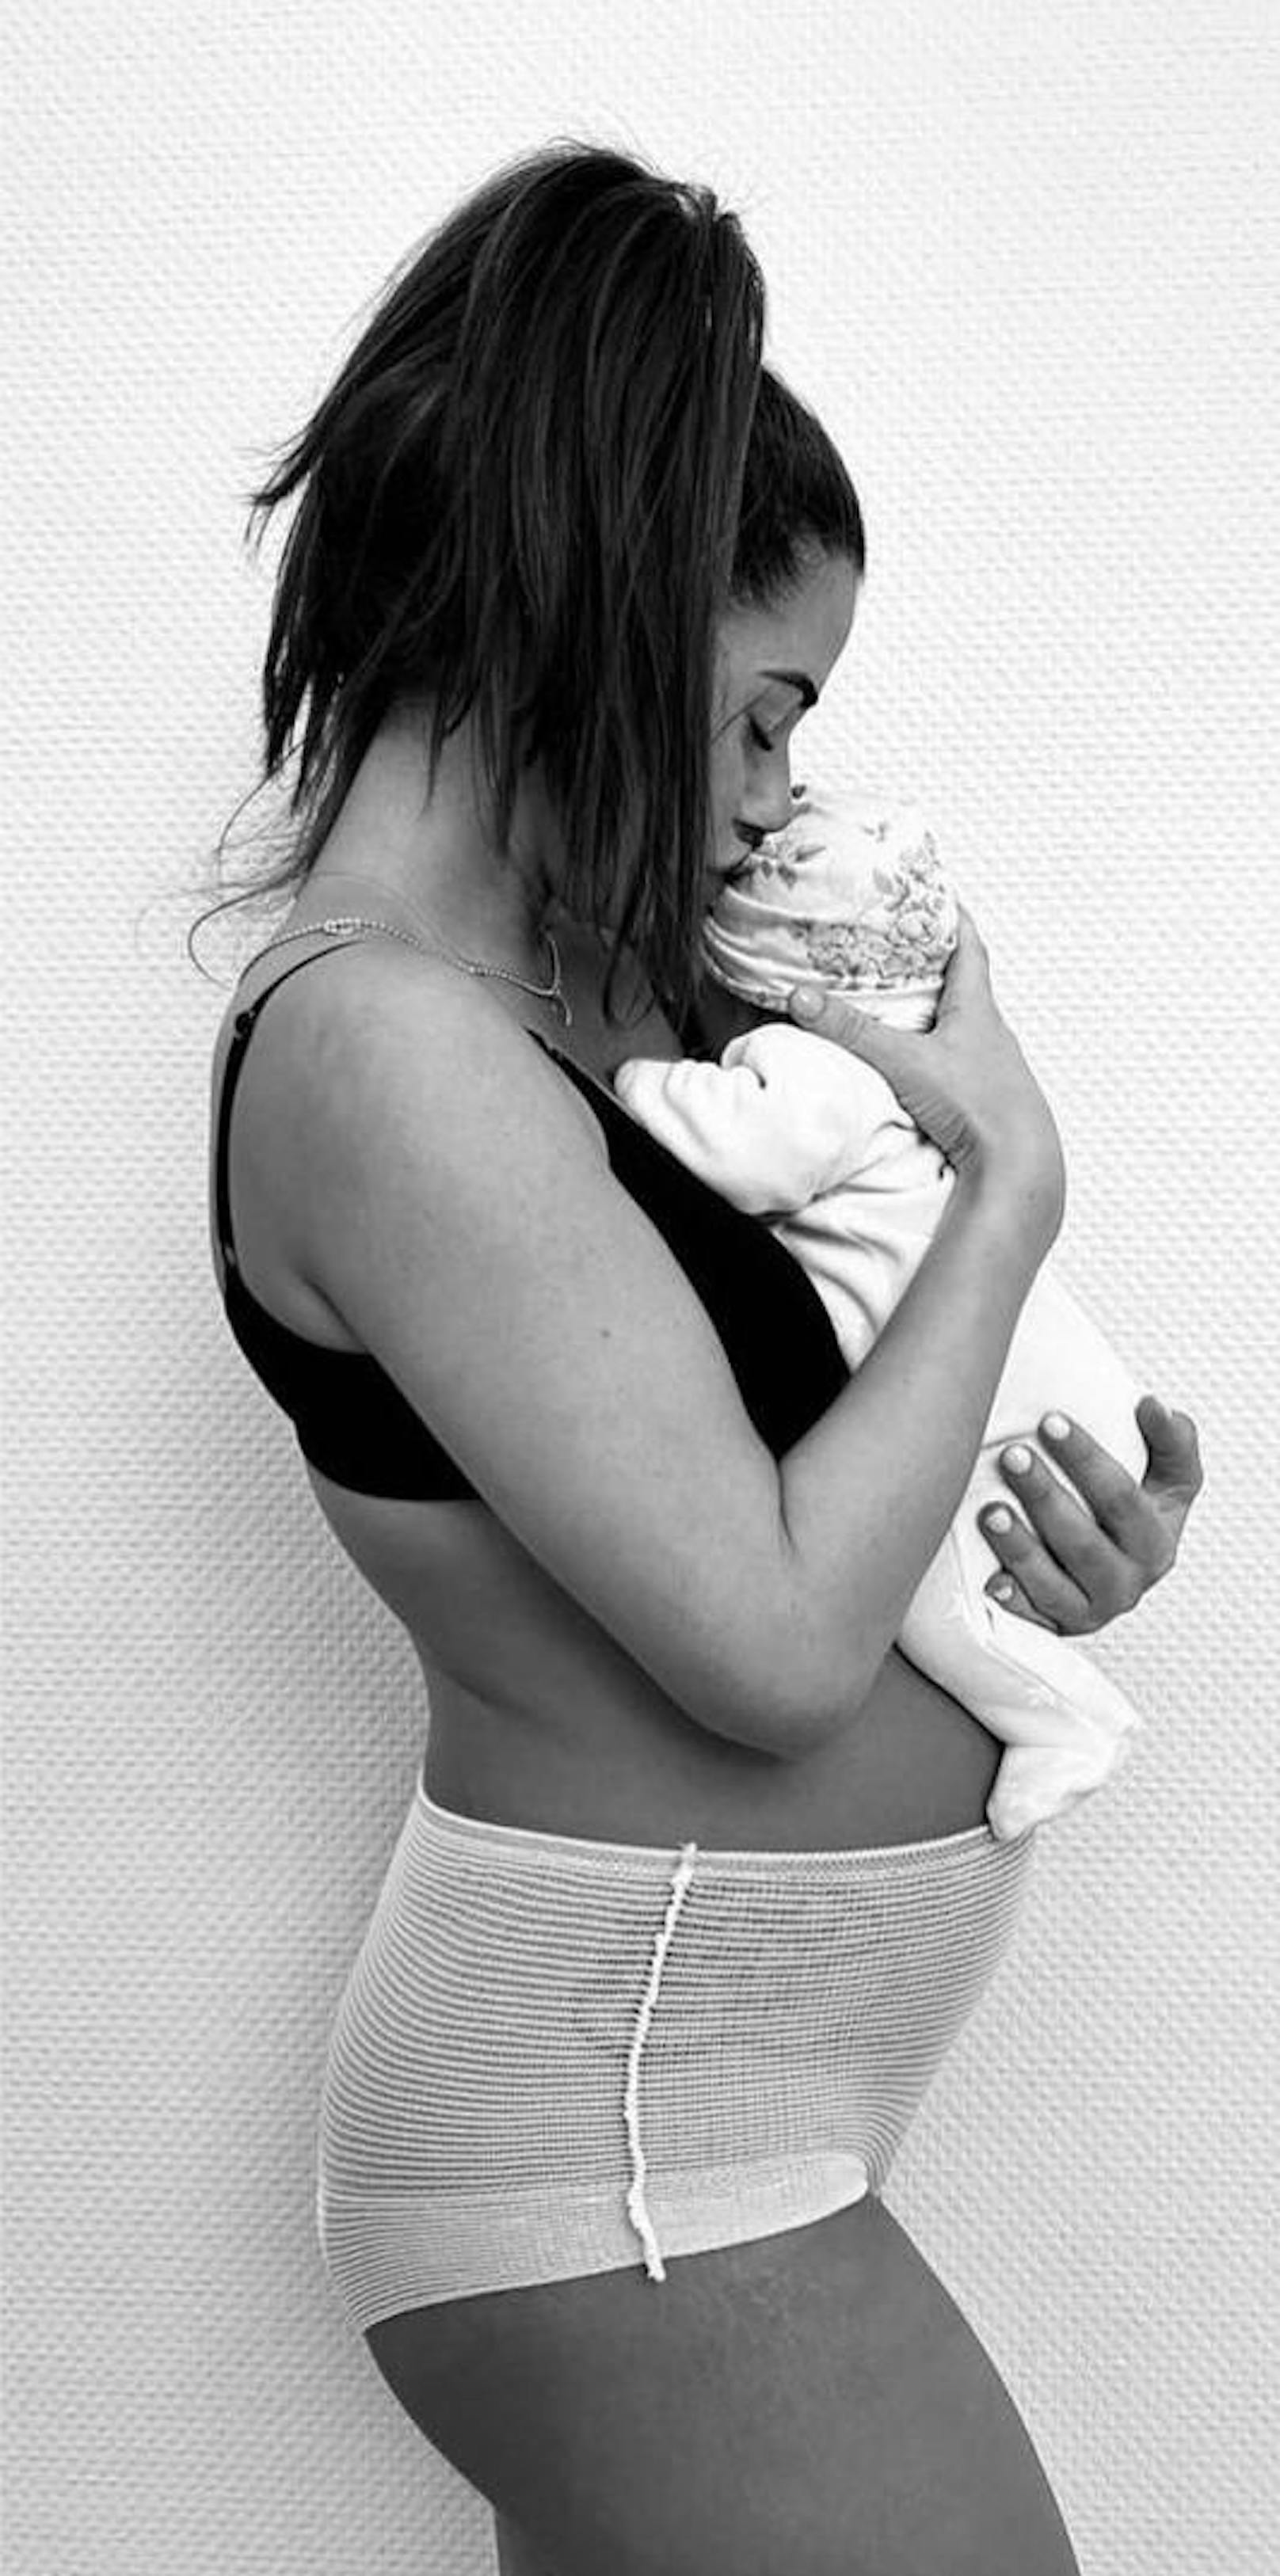 Sarah Engels zeigt 1. Foto ihre Tochter nach der Geburt